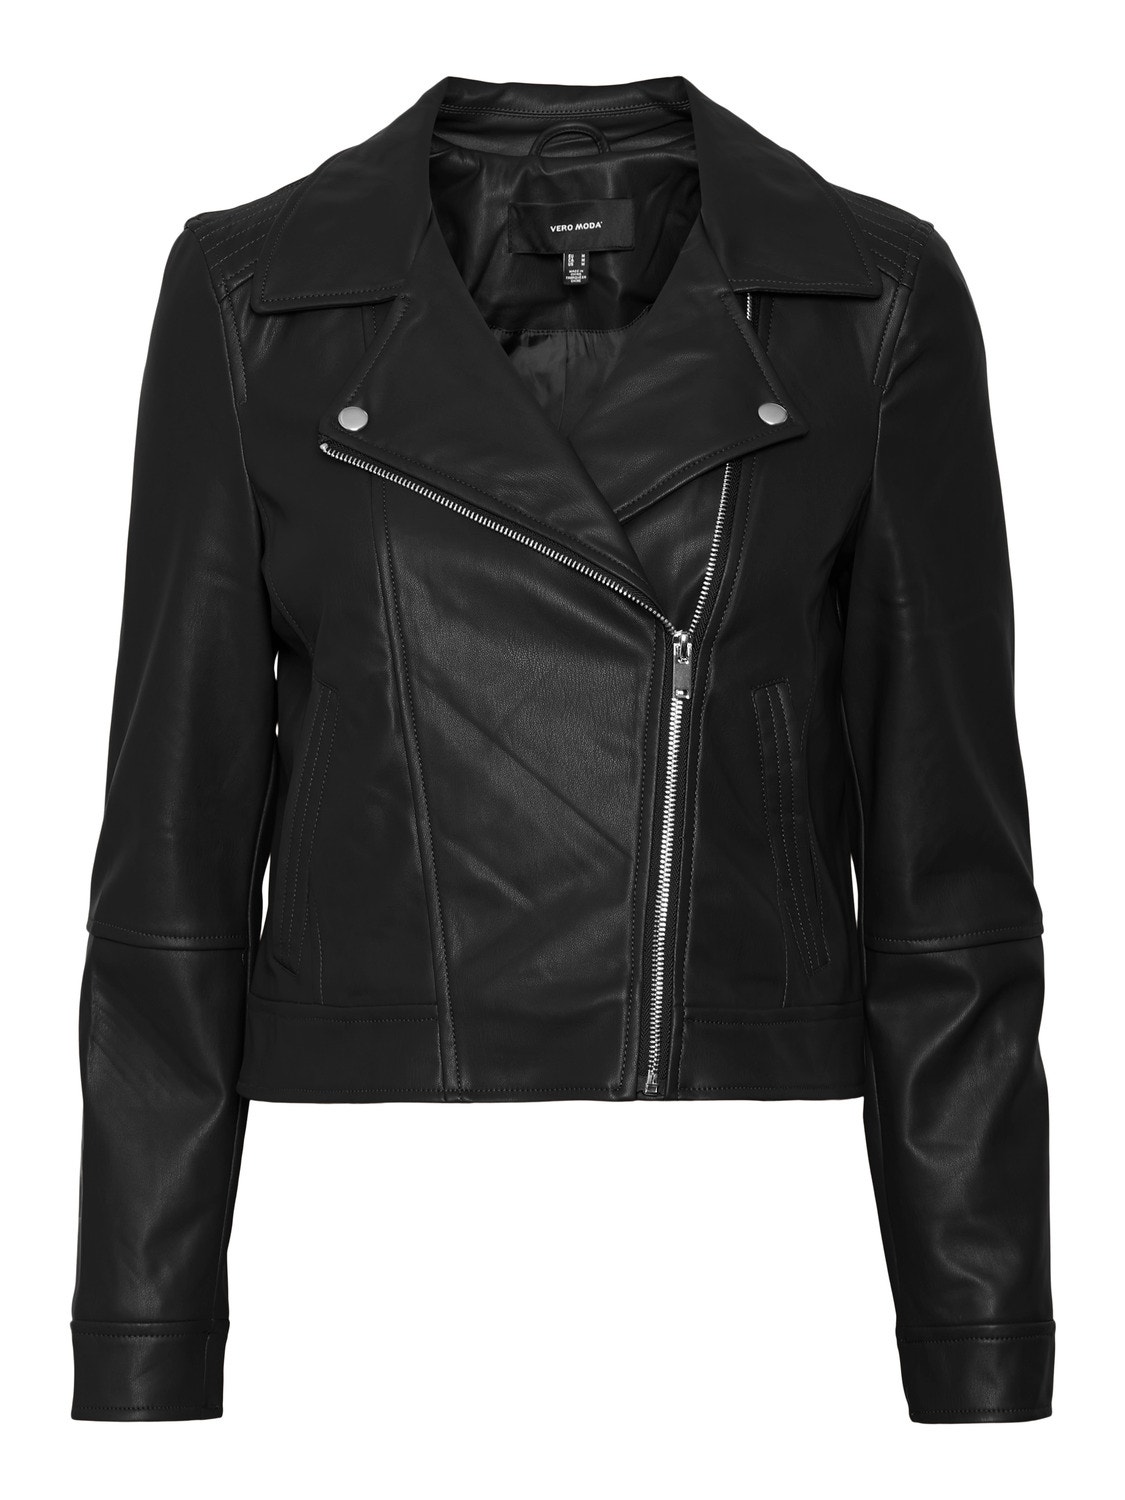 Vero Moda VMBELLA Jacket -Black - 10293500